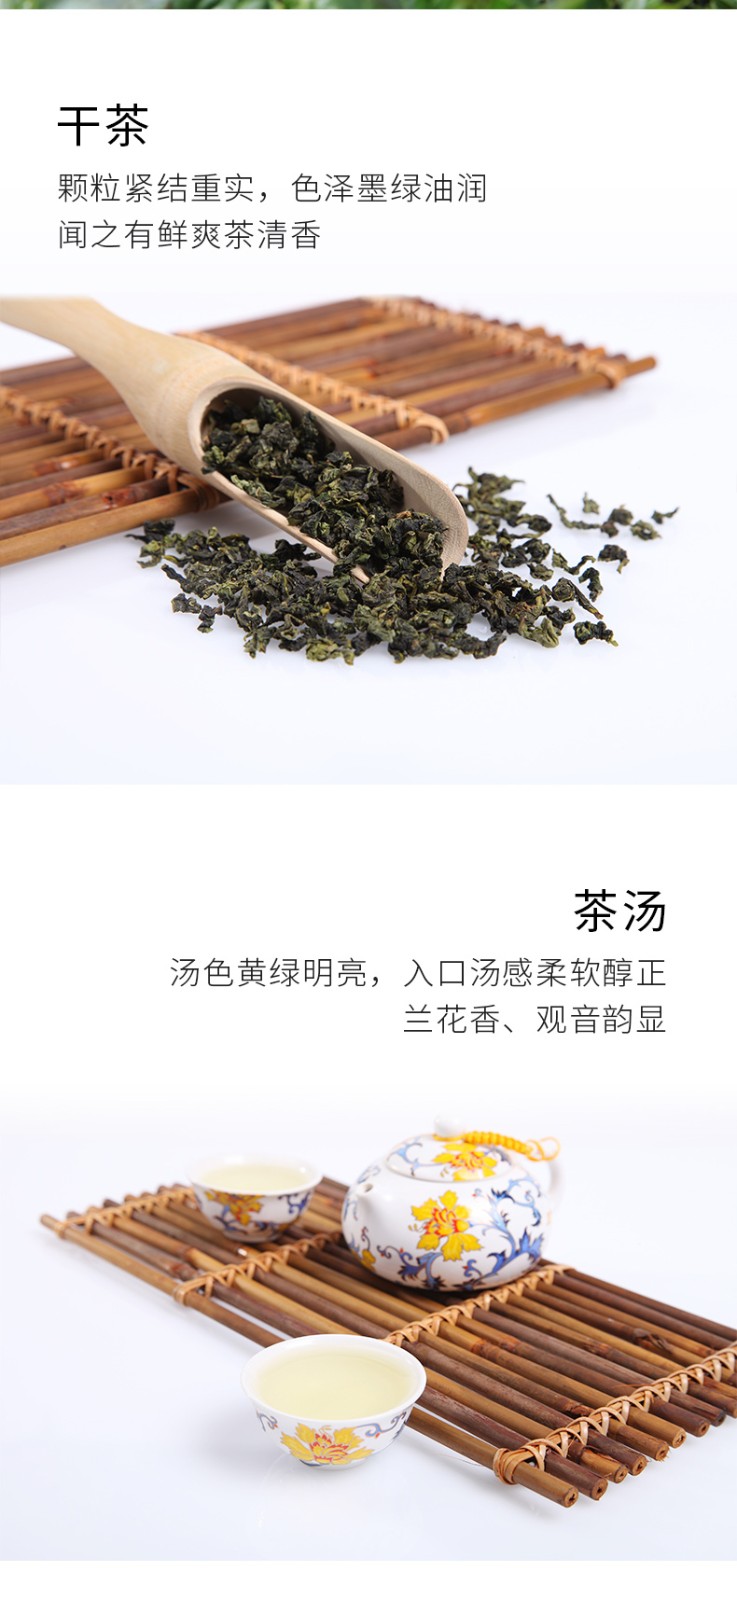 【山国孔明S1800-200g】安溪铁观音 清香型乌龙茶 礼盒装(图3)